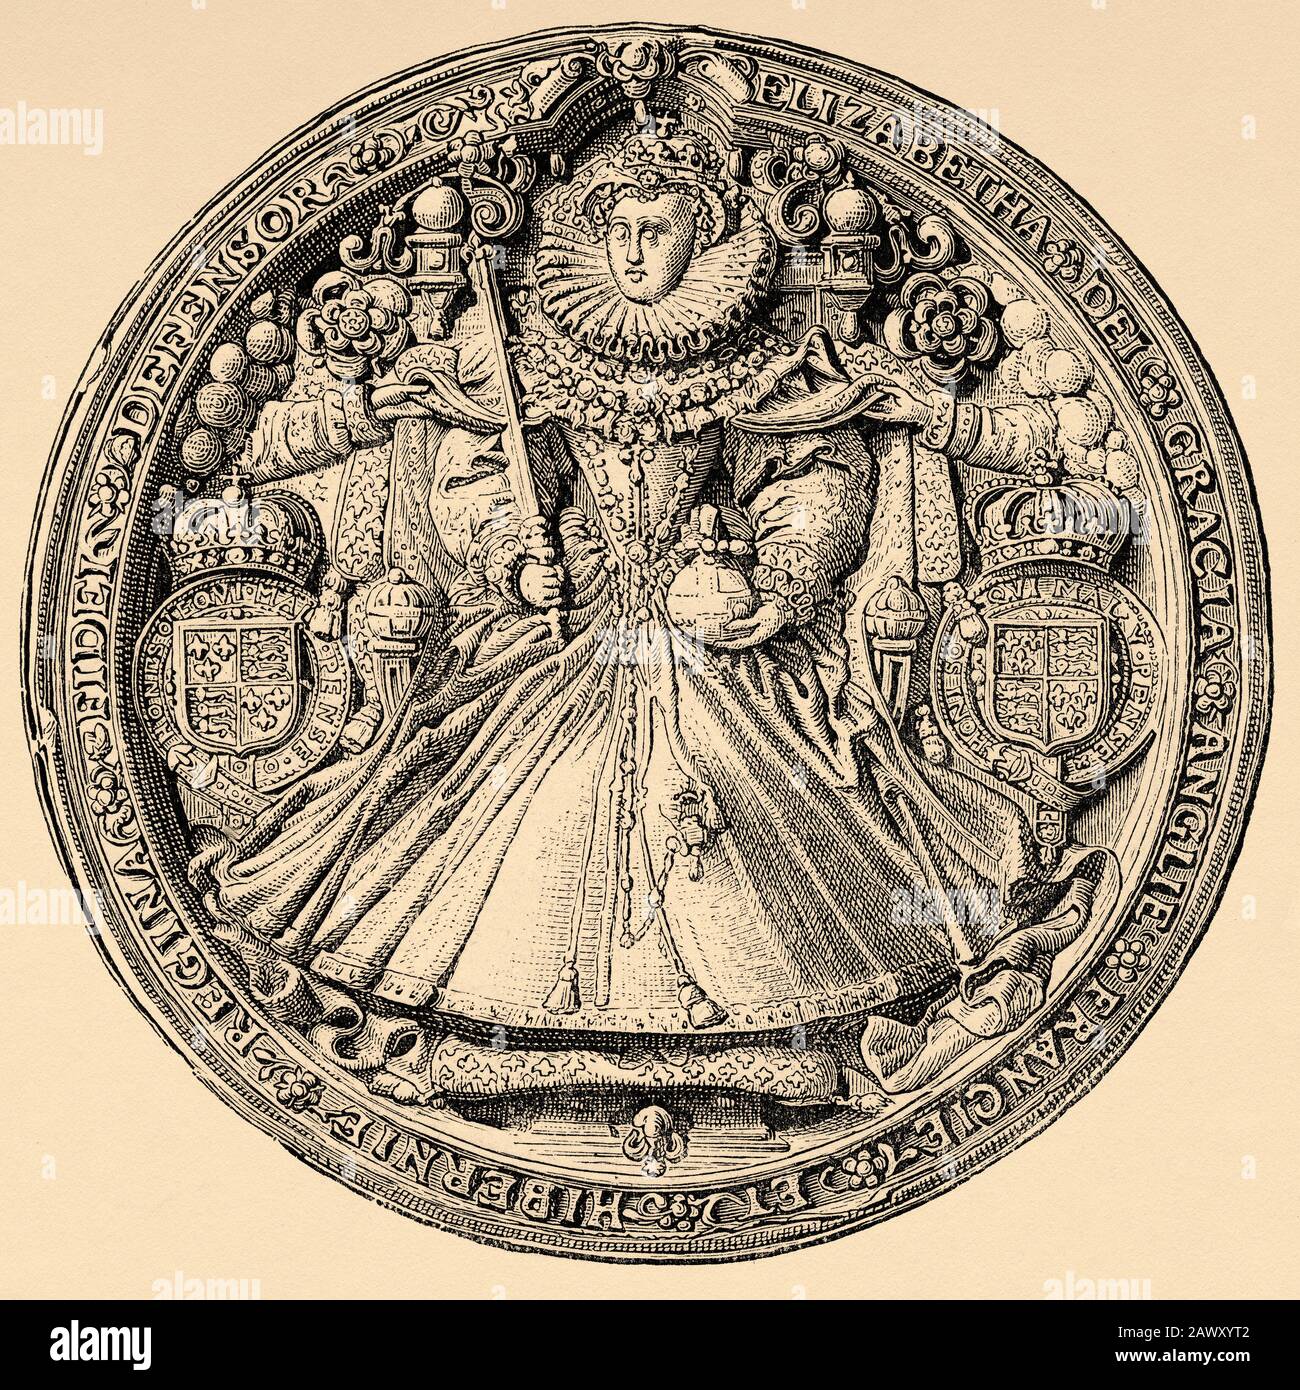 Médaille de portrait d'Elizabeth I d'Angleterre. La Reine Vierge, La Gloriana Ou La Bonne Reine Bess (Greenwich, 7 Septembre 1533 - Richmond, 24 Mars 1603). Banque D'Images